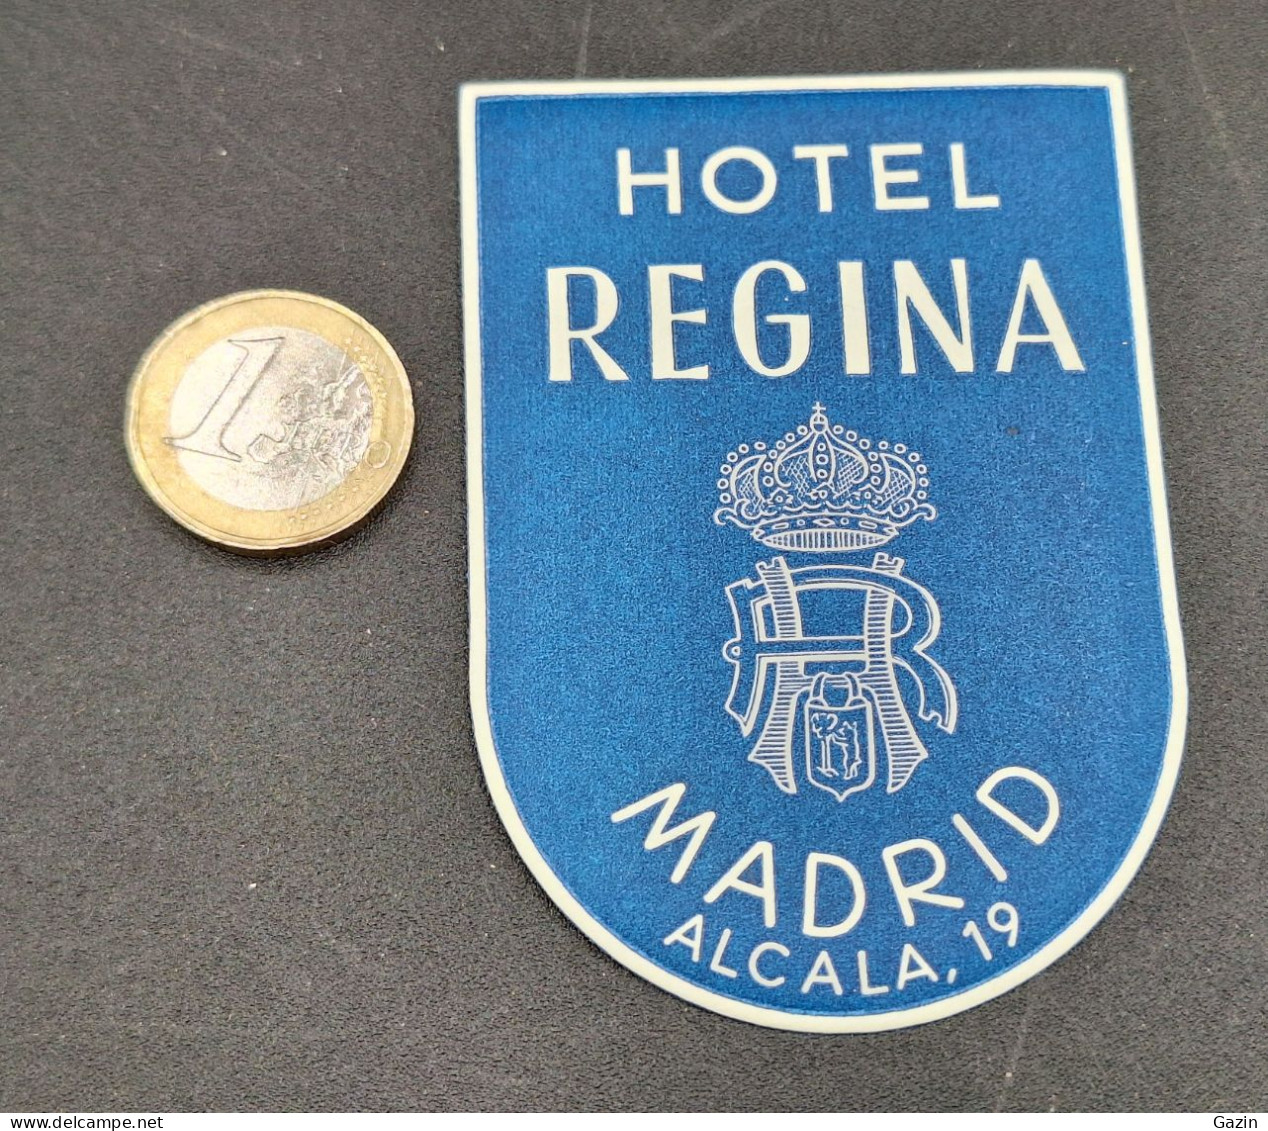 C7/3 - Hotel Regina * Madrid * Espana * Luggage Lable * Rótulo * Etiqueta - Hotel Labels